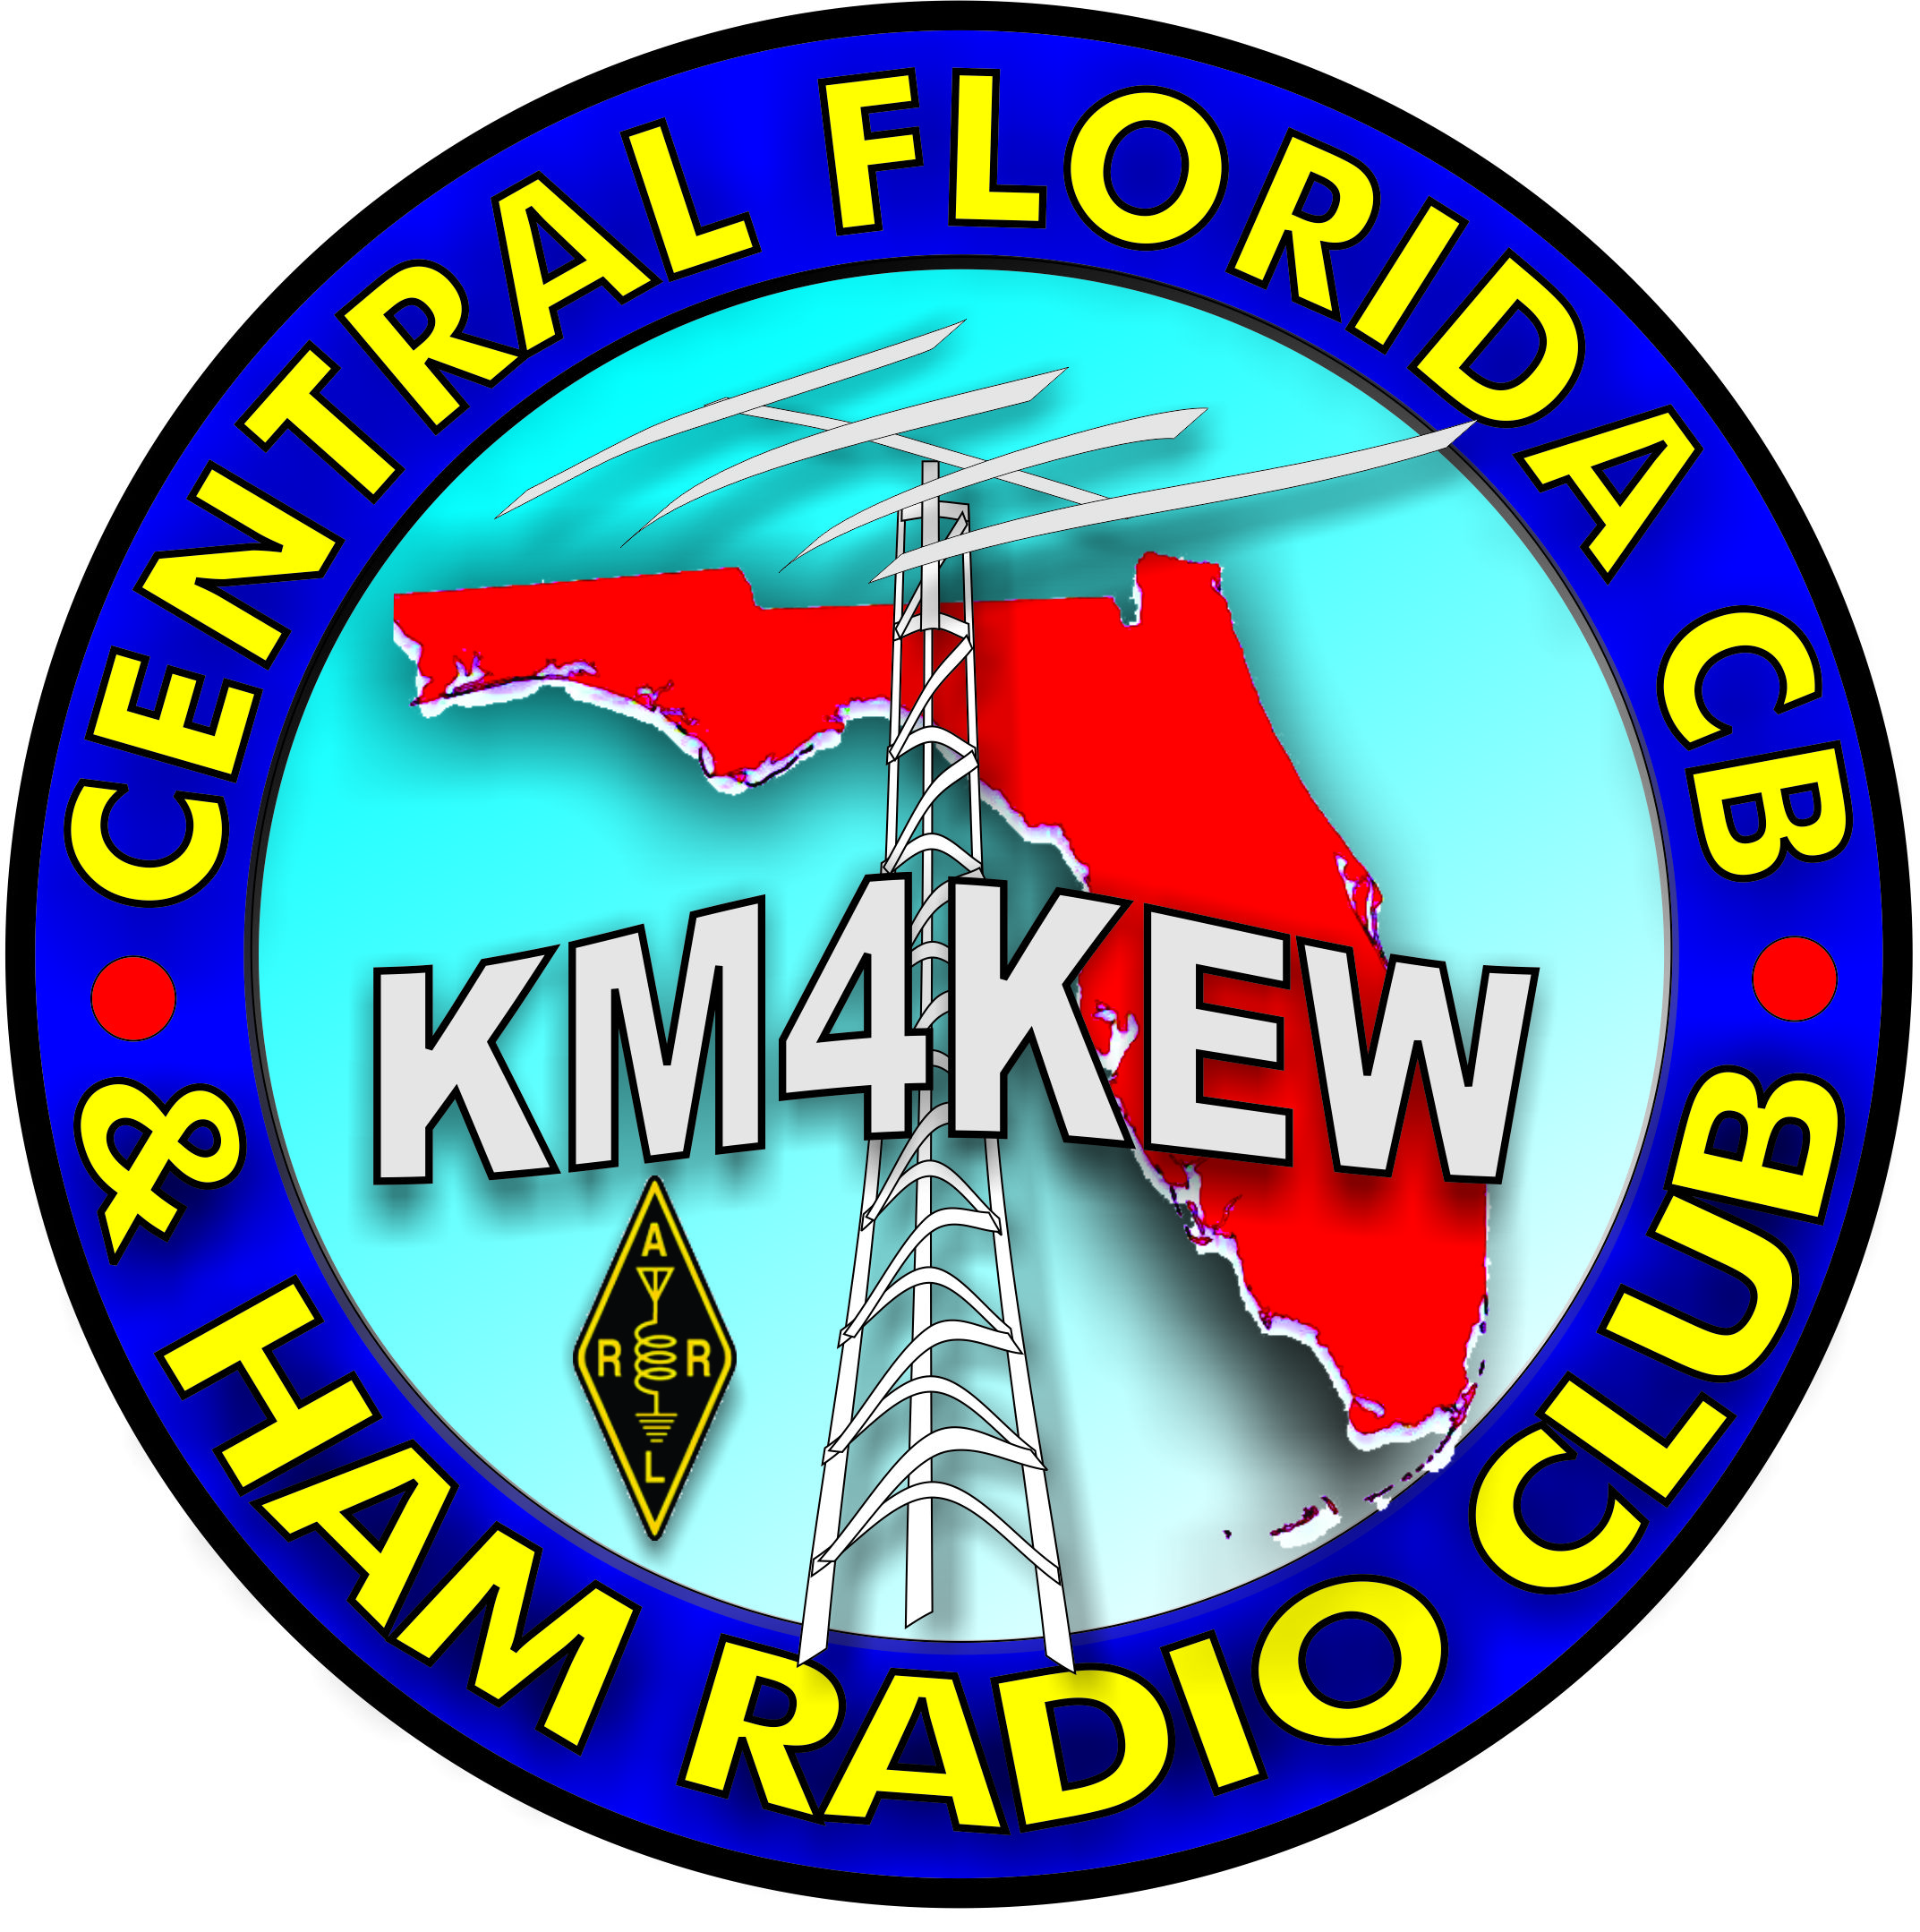 Arrl Clubs Central Fl Cb And Ham Radio Club